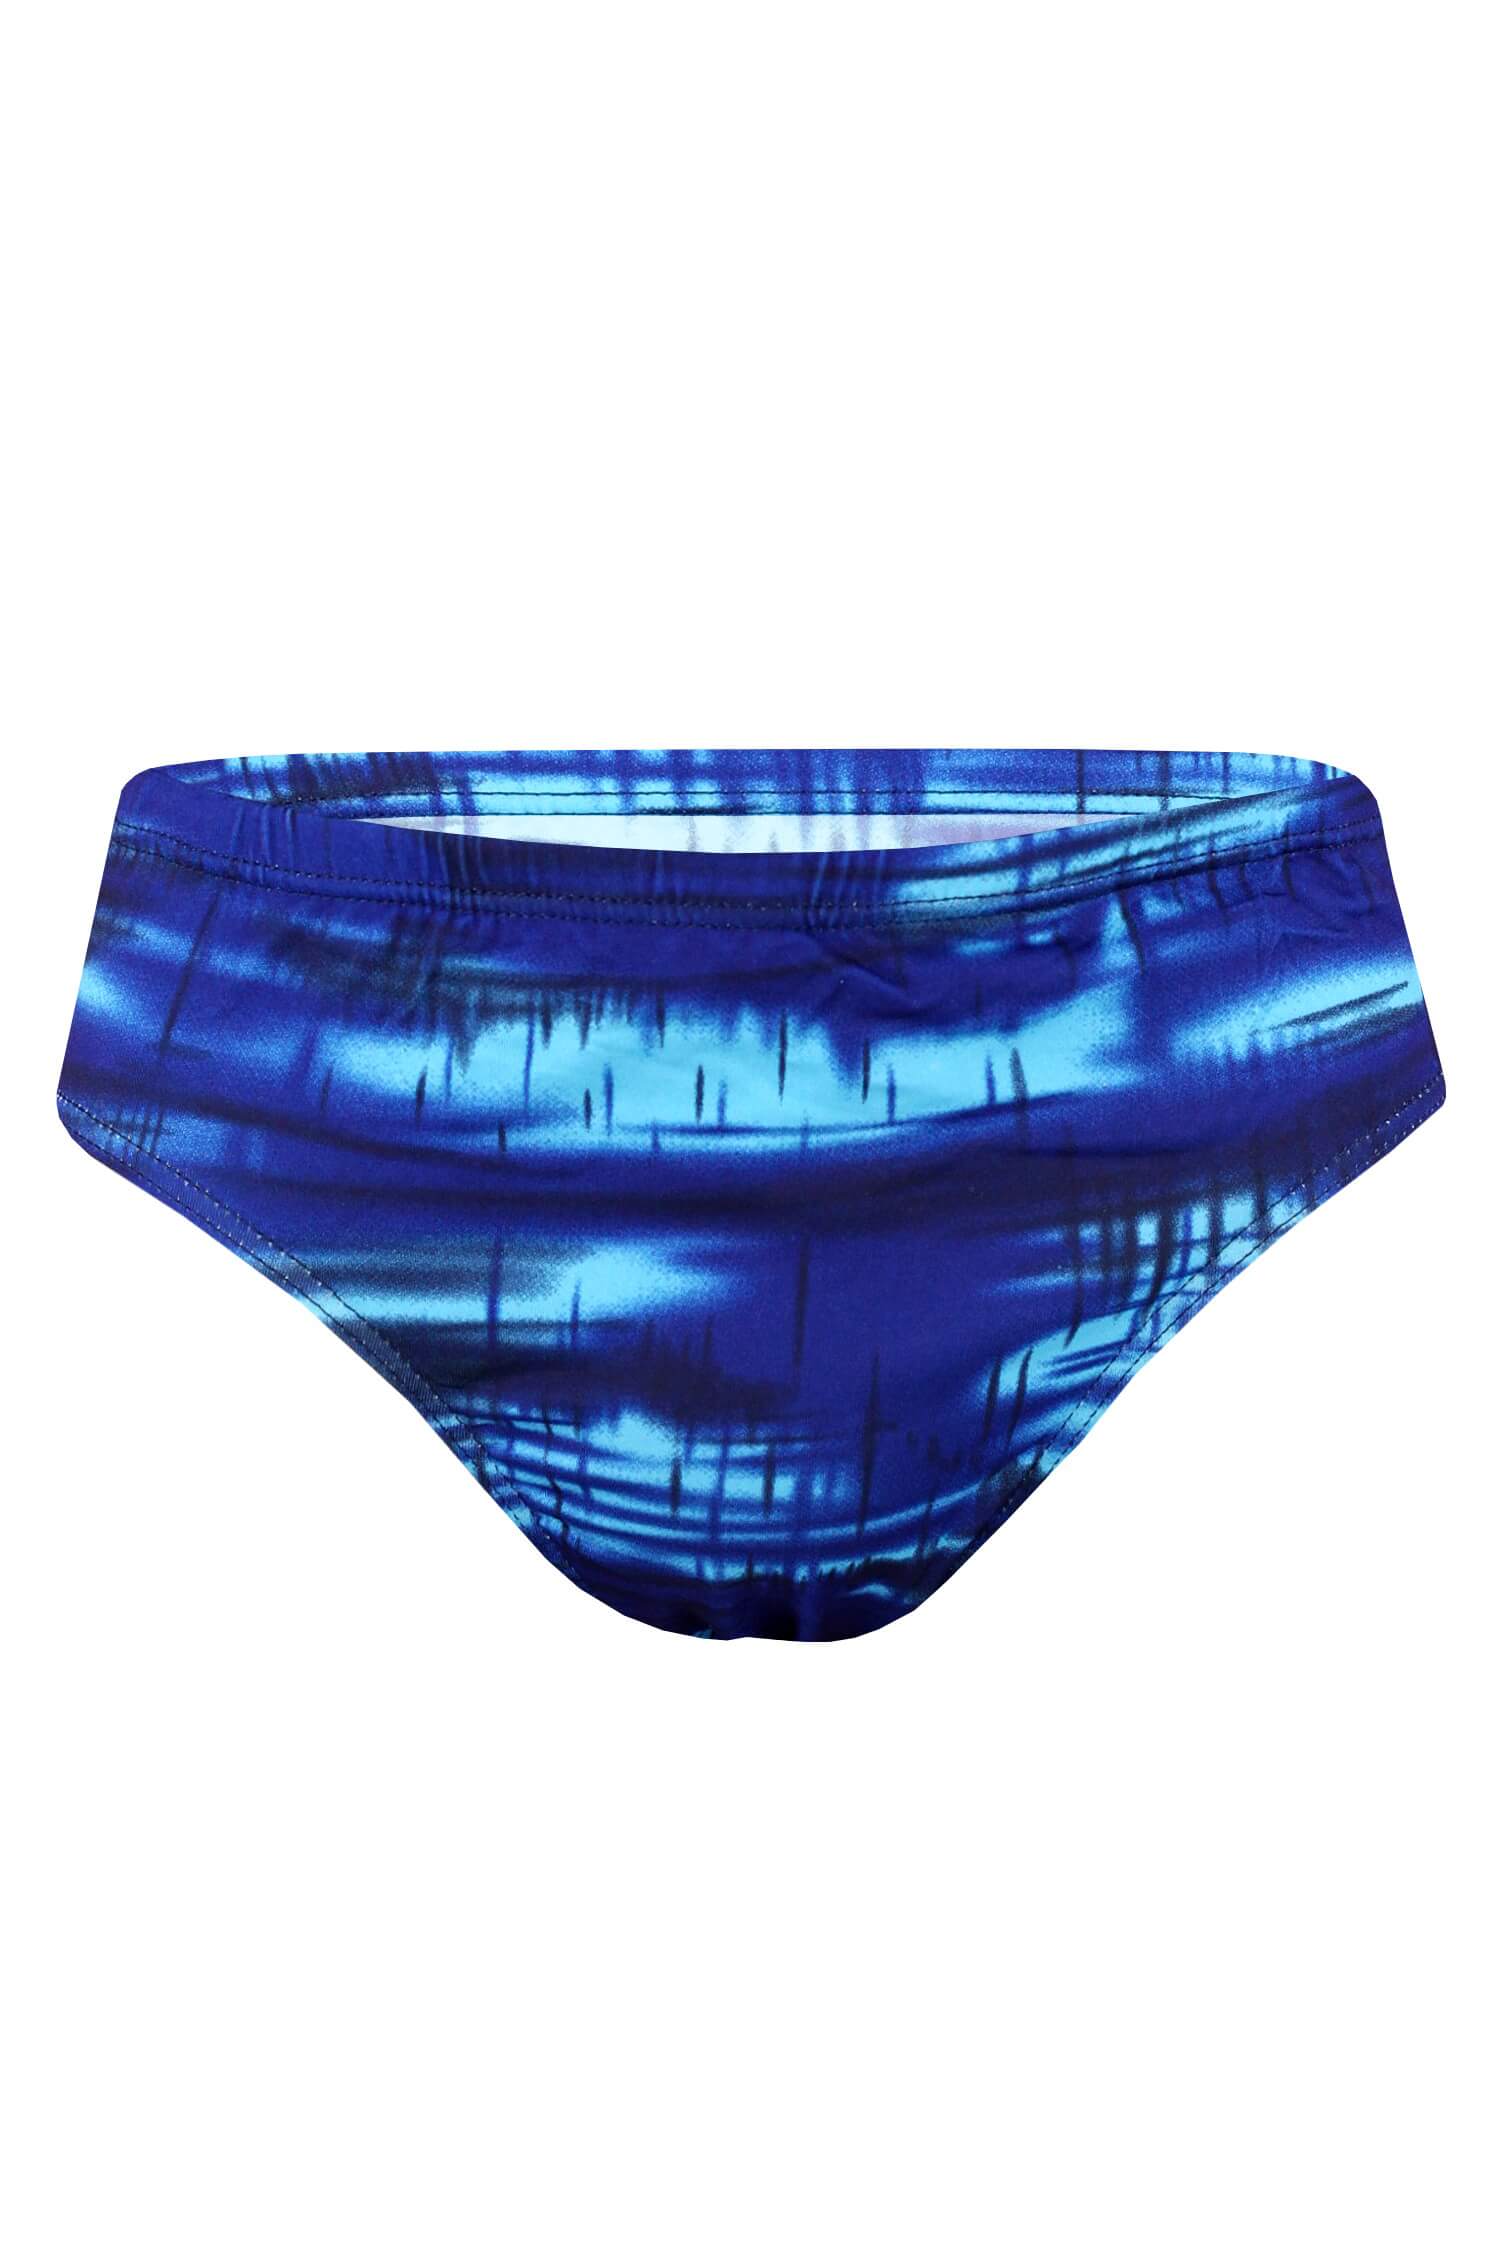 Trevon blue pánské slipové plavky ST0801 S modrá